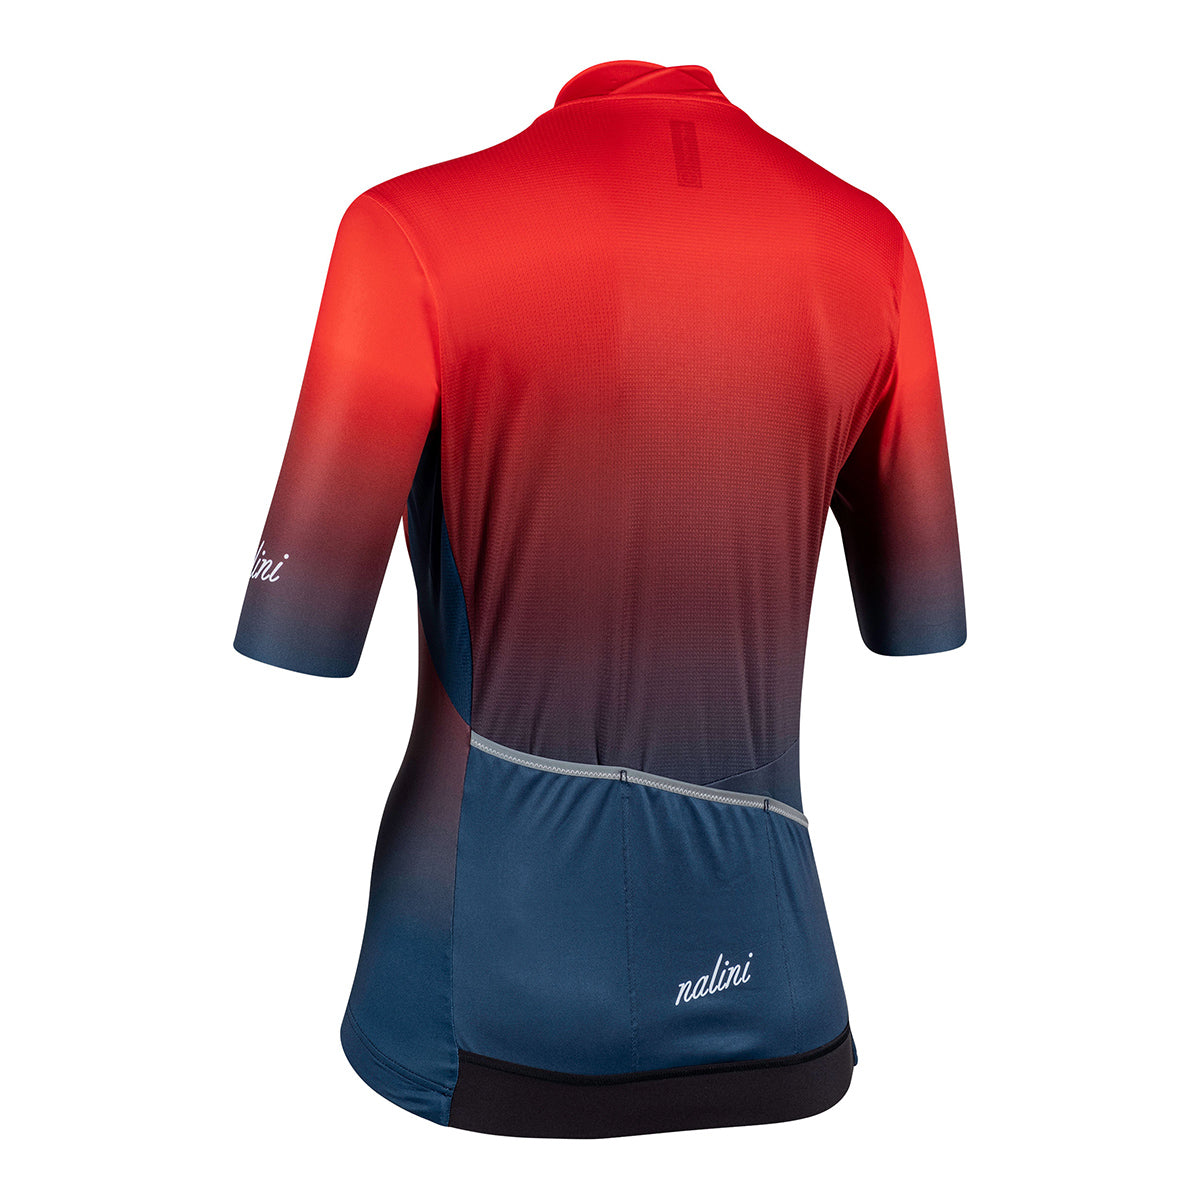 Nalini Antwerp Women's Cycling Jersey (Red / Blue) XS, S, M, L, XL